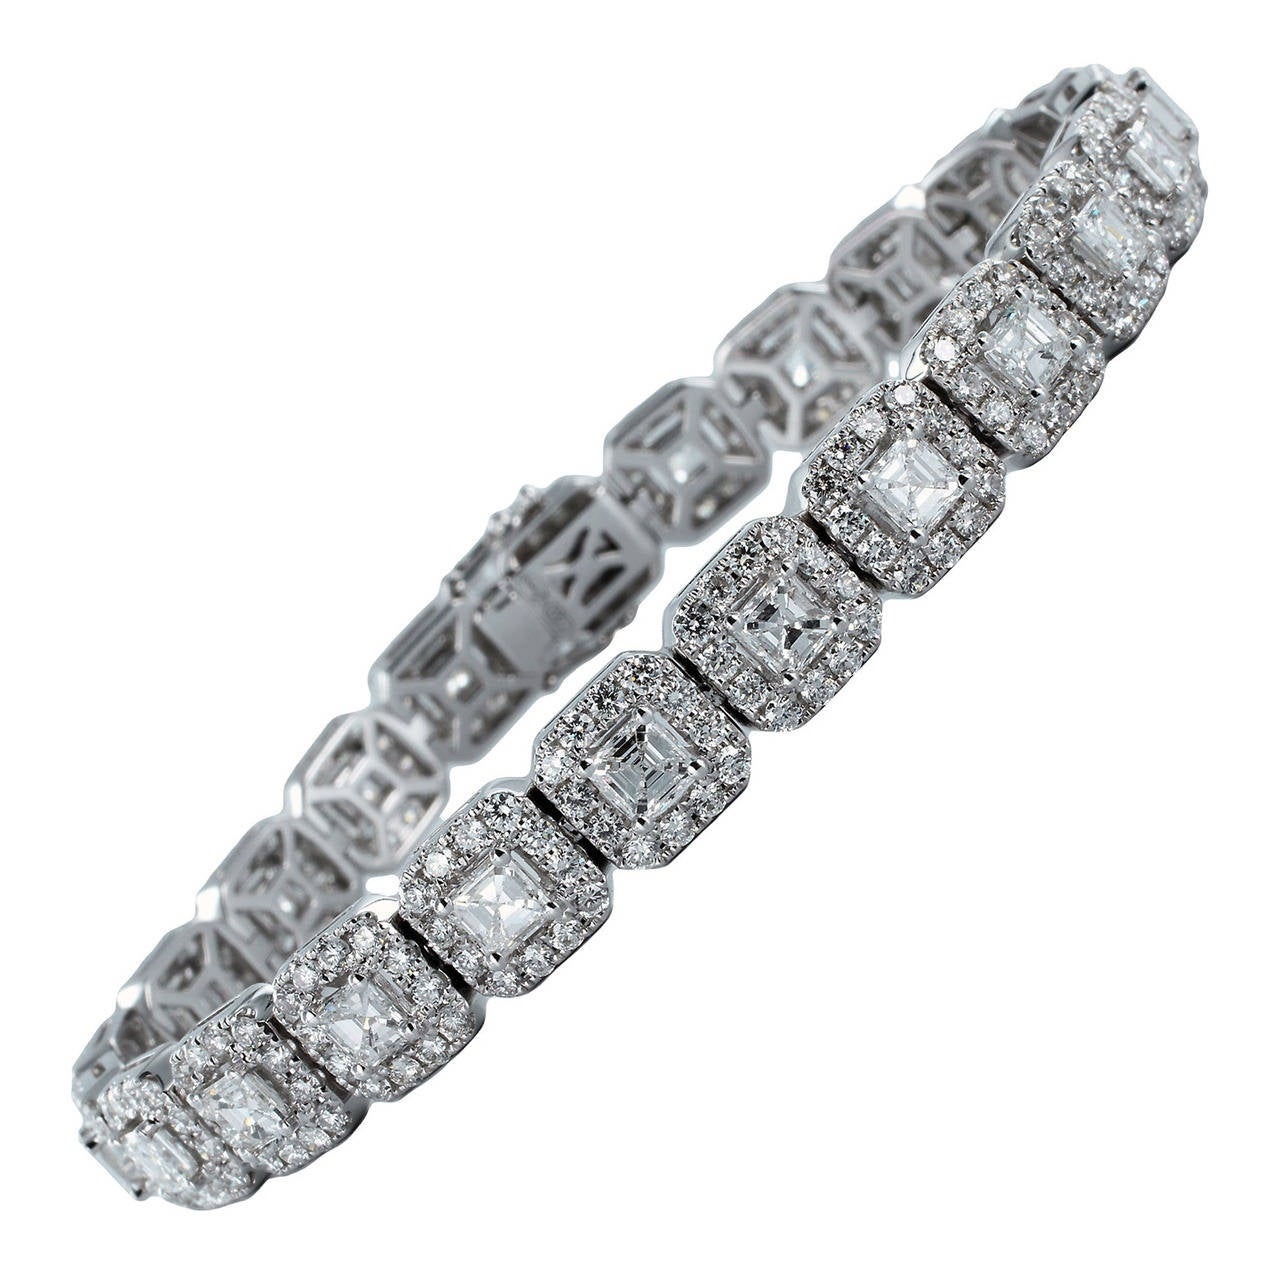 8.83 Carat Diamond Bracelet For Sale